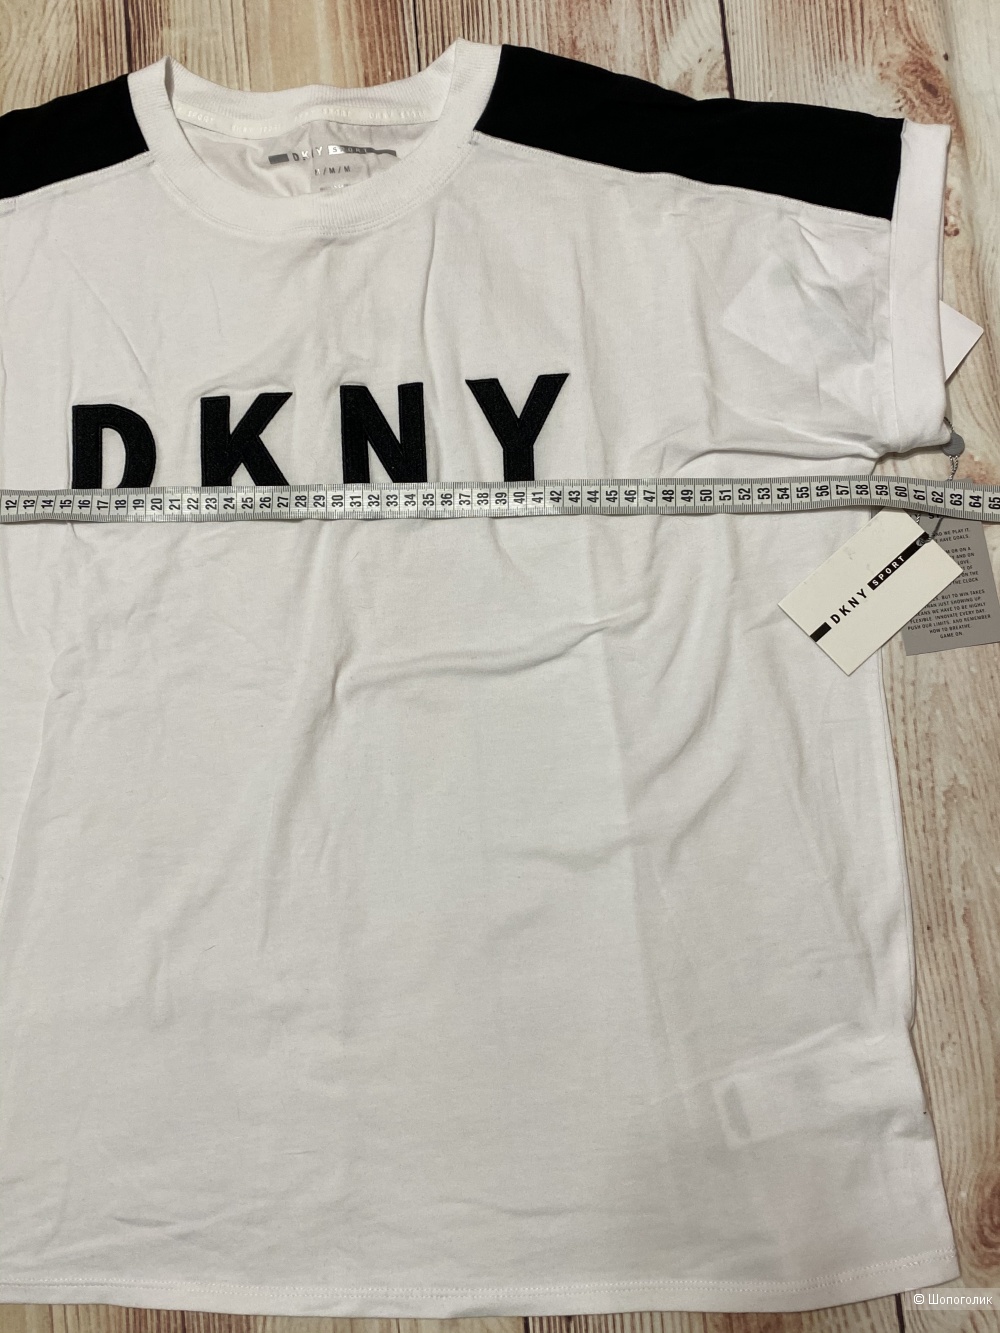 Футболка DKNY, размер М. Большемерит